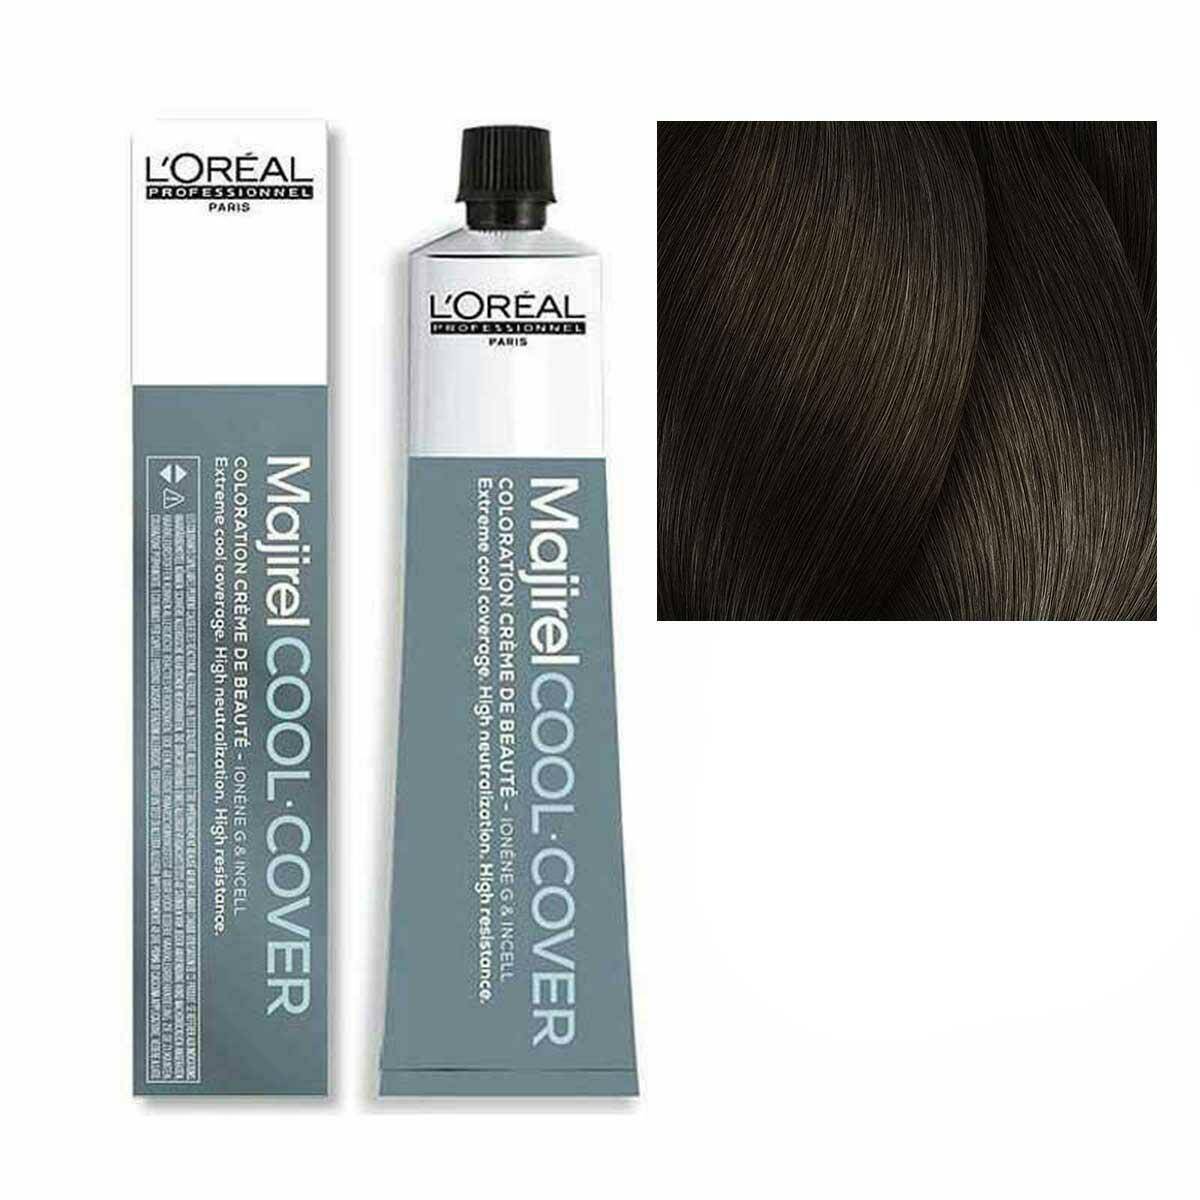 Loreal Majirel Cool Cover Farba do włosów - 6.17 Ciemny blond popielato-metaliczny, chłodne odcienie 50ml